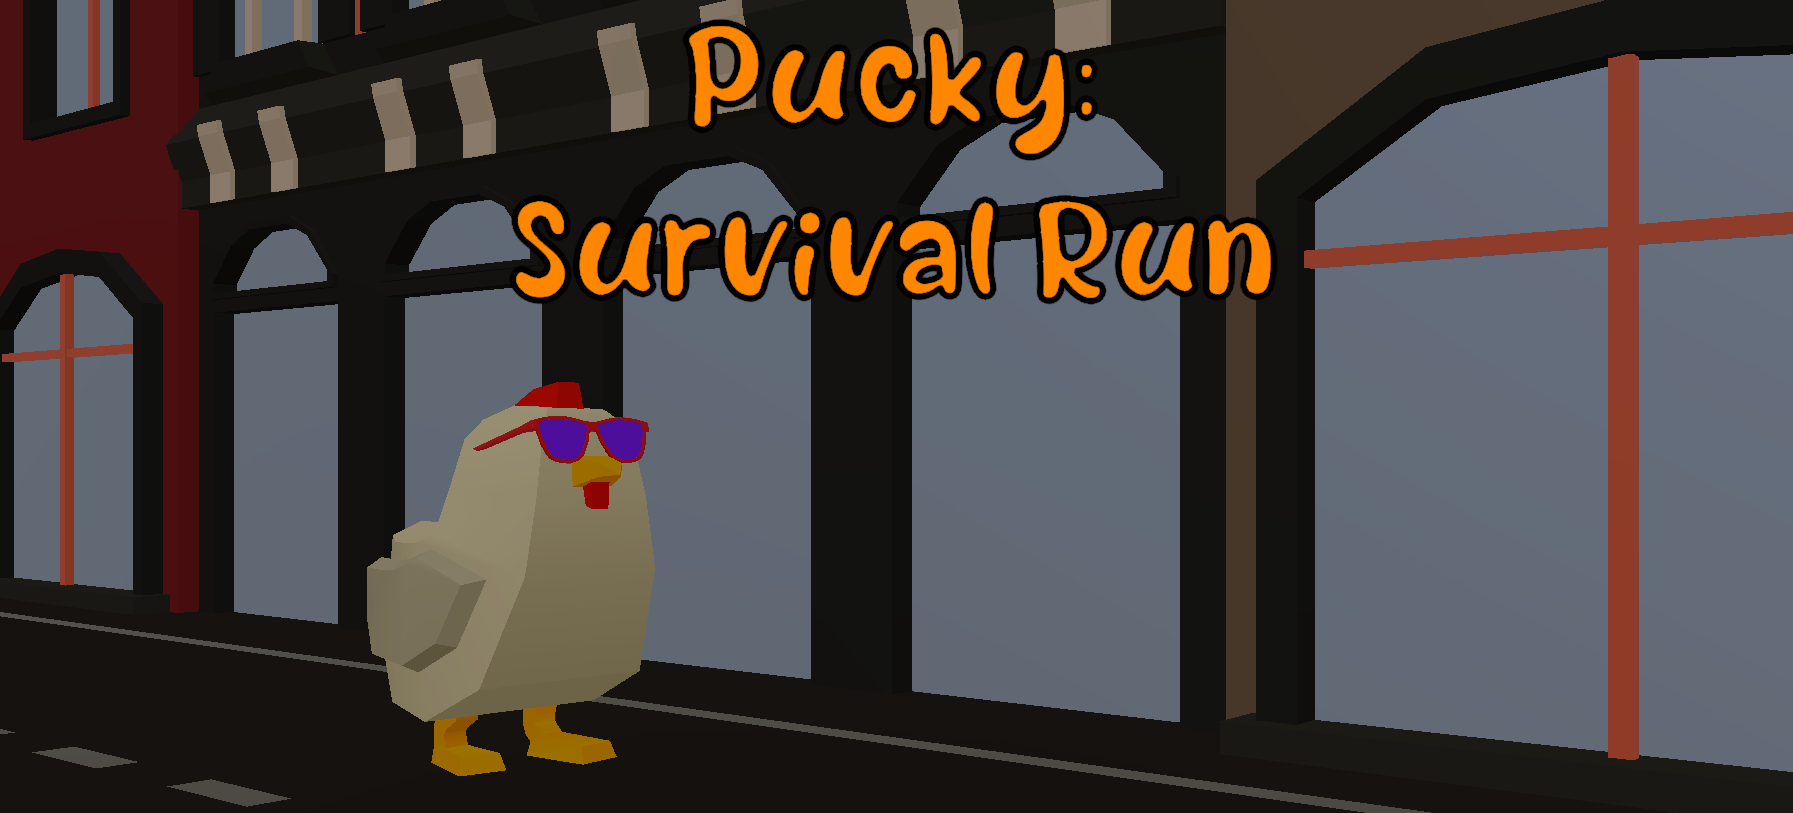 Pucky: Survival Run